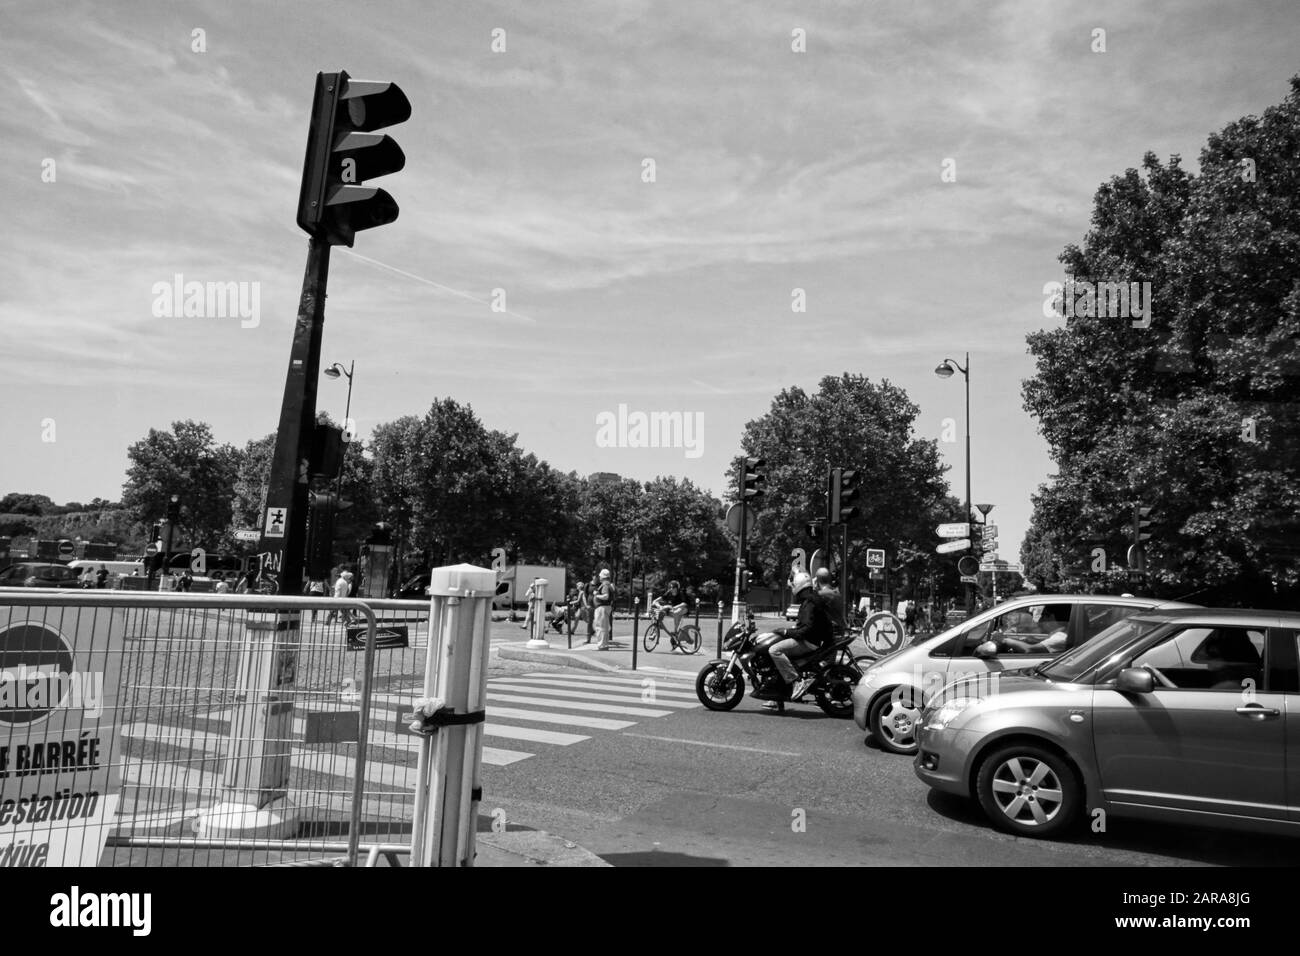 Rue avec signal et voitures, Paris, France, Europe Banque D'Images